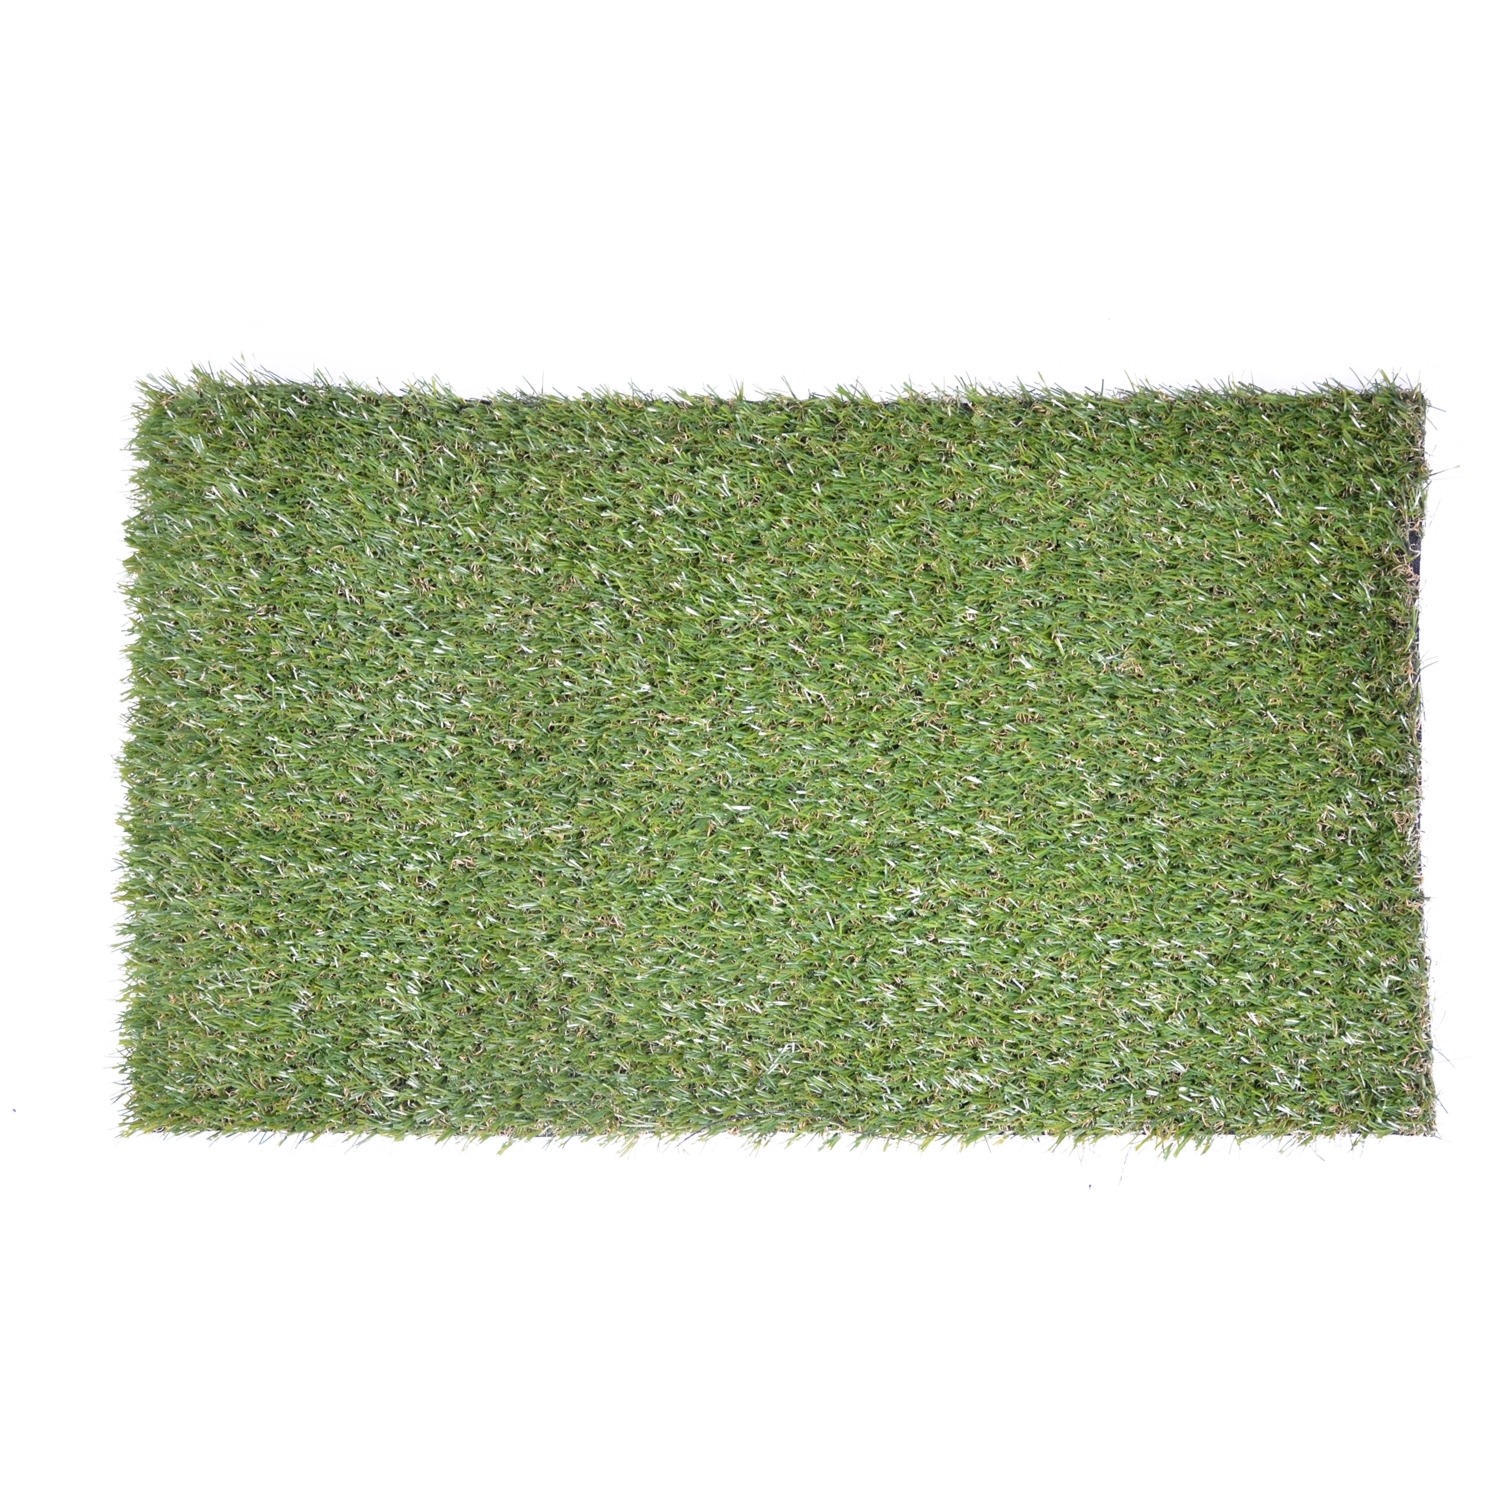 Standard 20mm Pile Artificial Grass Image